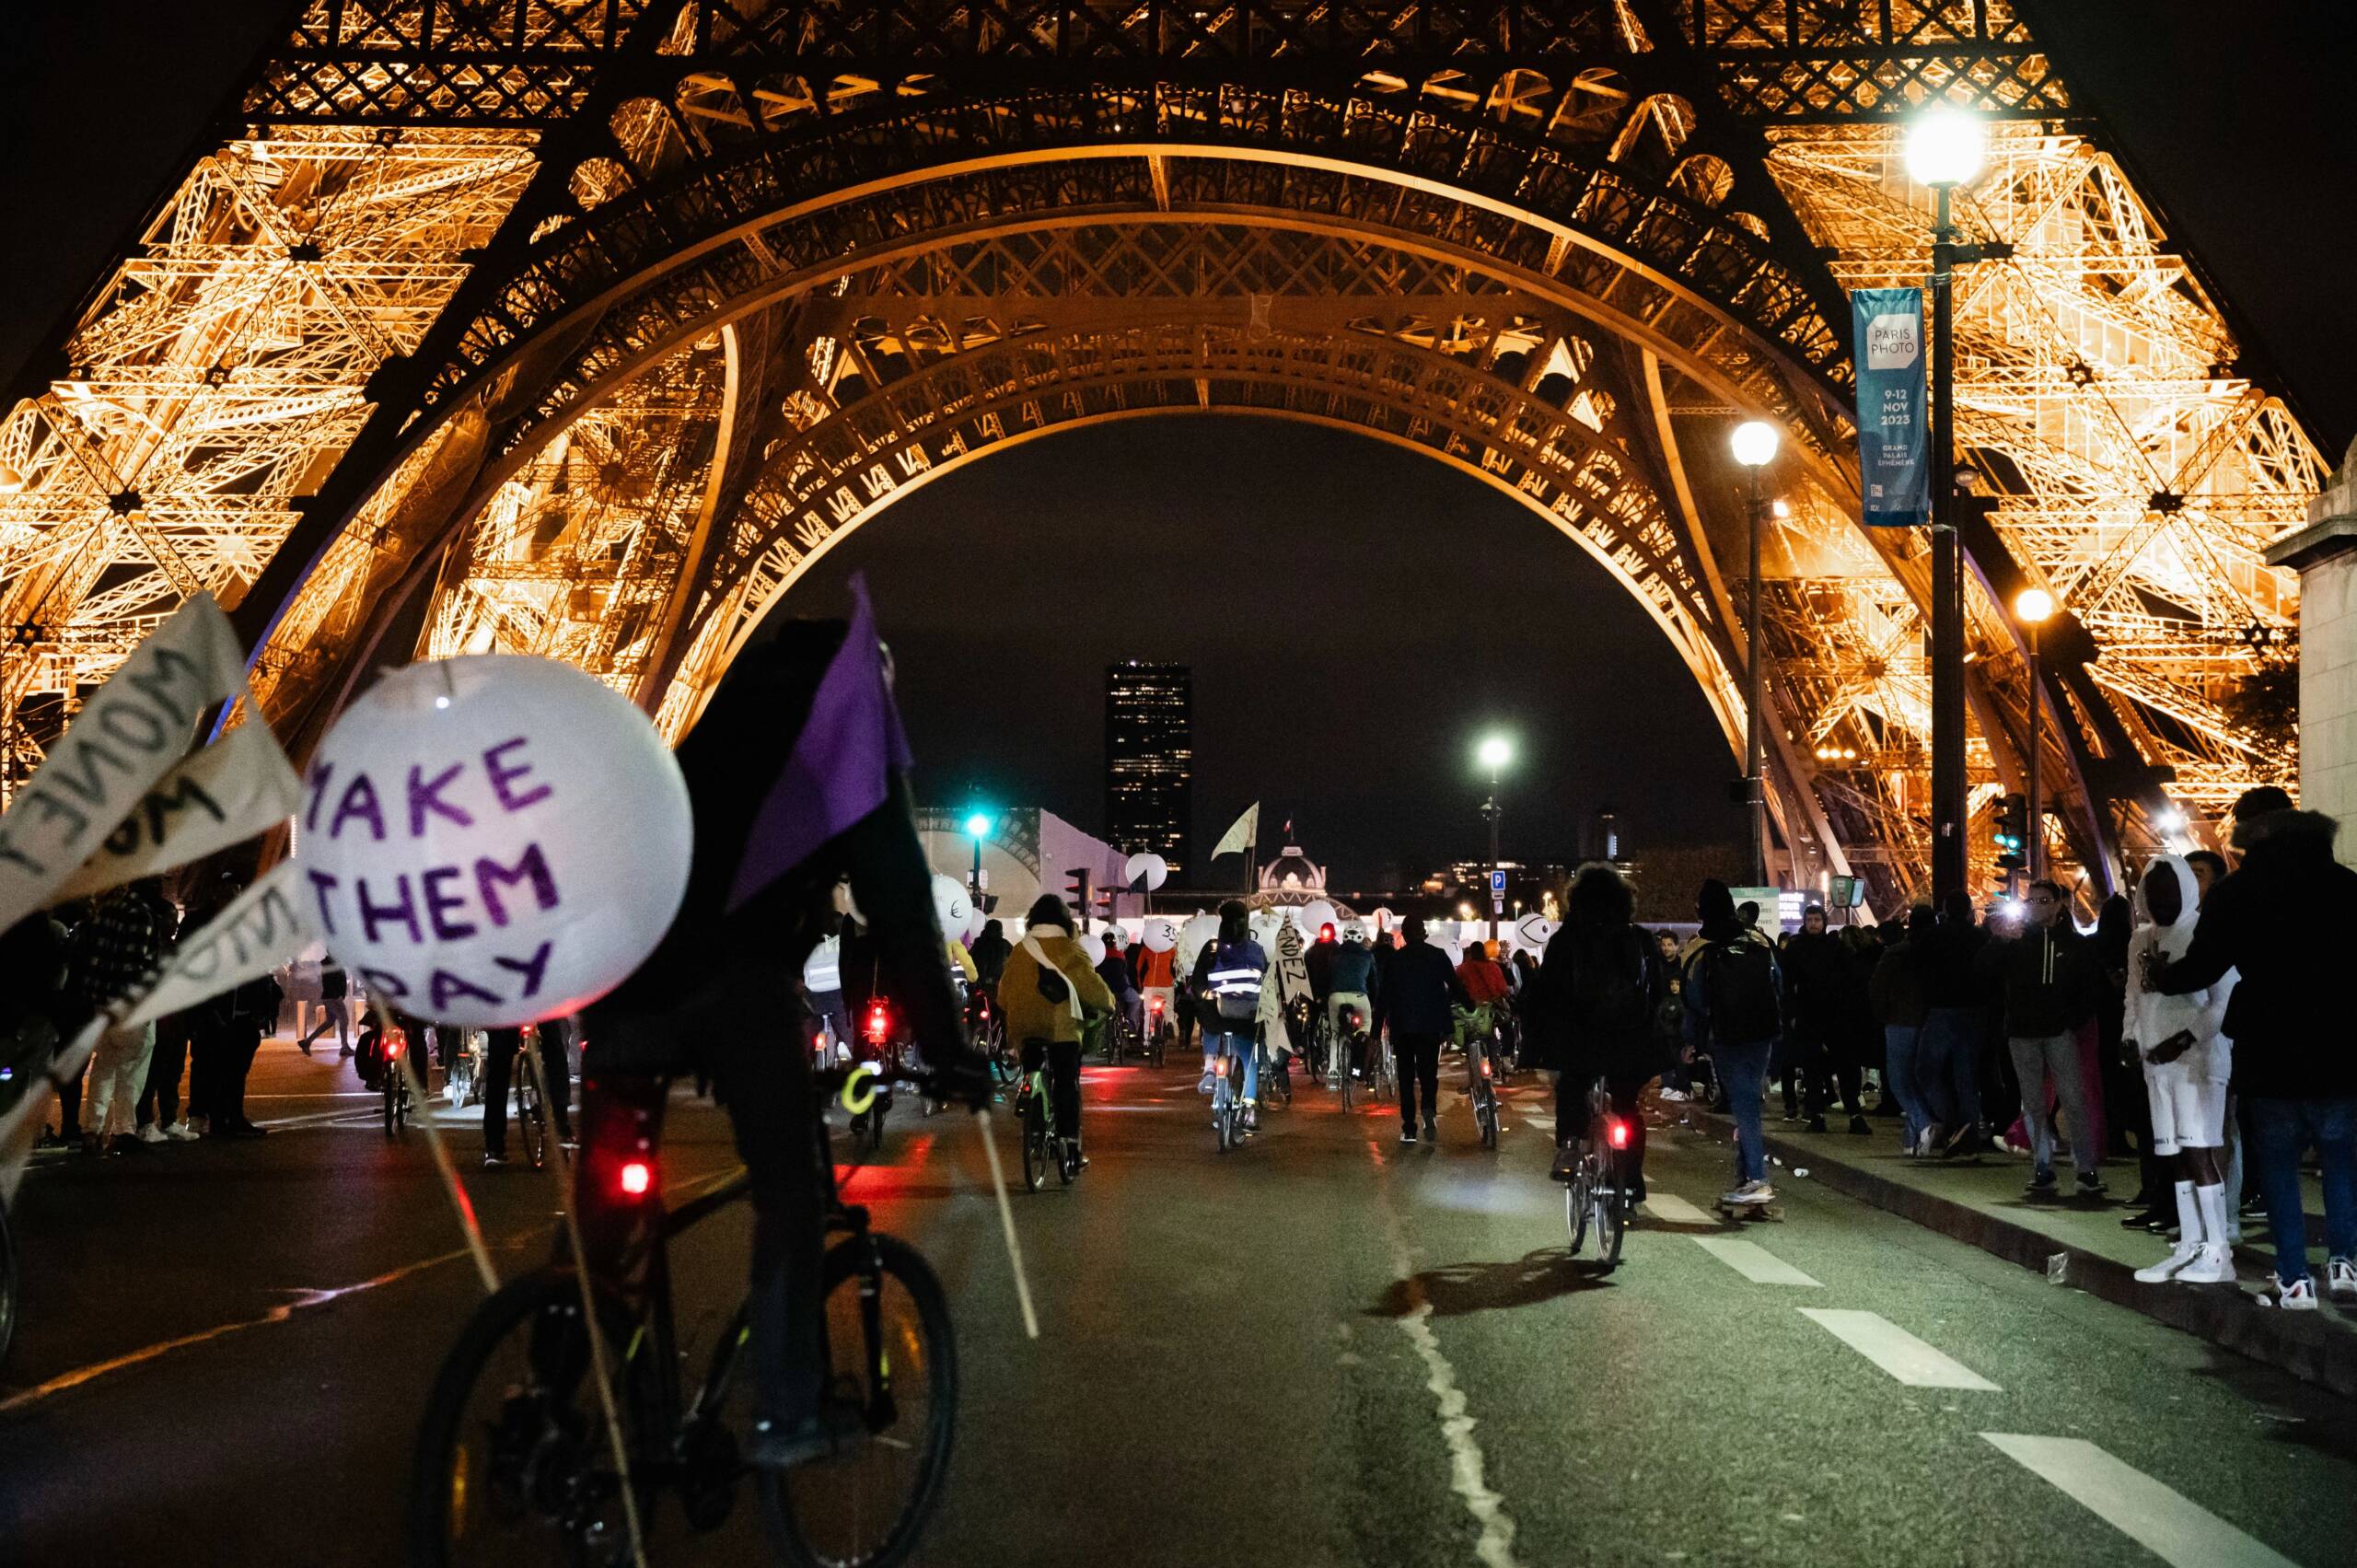 Fransa, Paris, 3 Kasım: İklim adaleti grupları Paris'te, Total gibi büyük kirleticilerin merkezlerinden Parlamento yakınlarına kadar uzanan neon ışıklı bir geçit töreni düzenledi. Gruplar, hükümetleri, çevreyi kirletenleri vergilendirmeye çağırıyorlar. Fotoğraf: Claire Jaillard